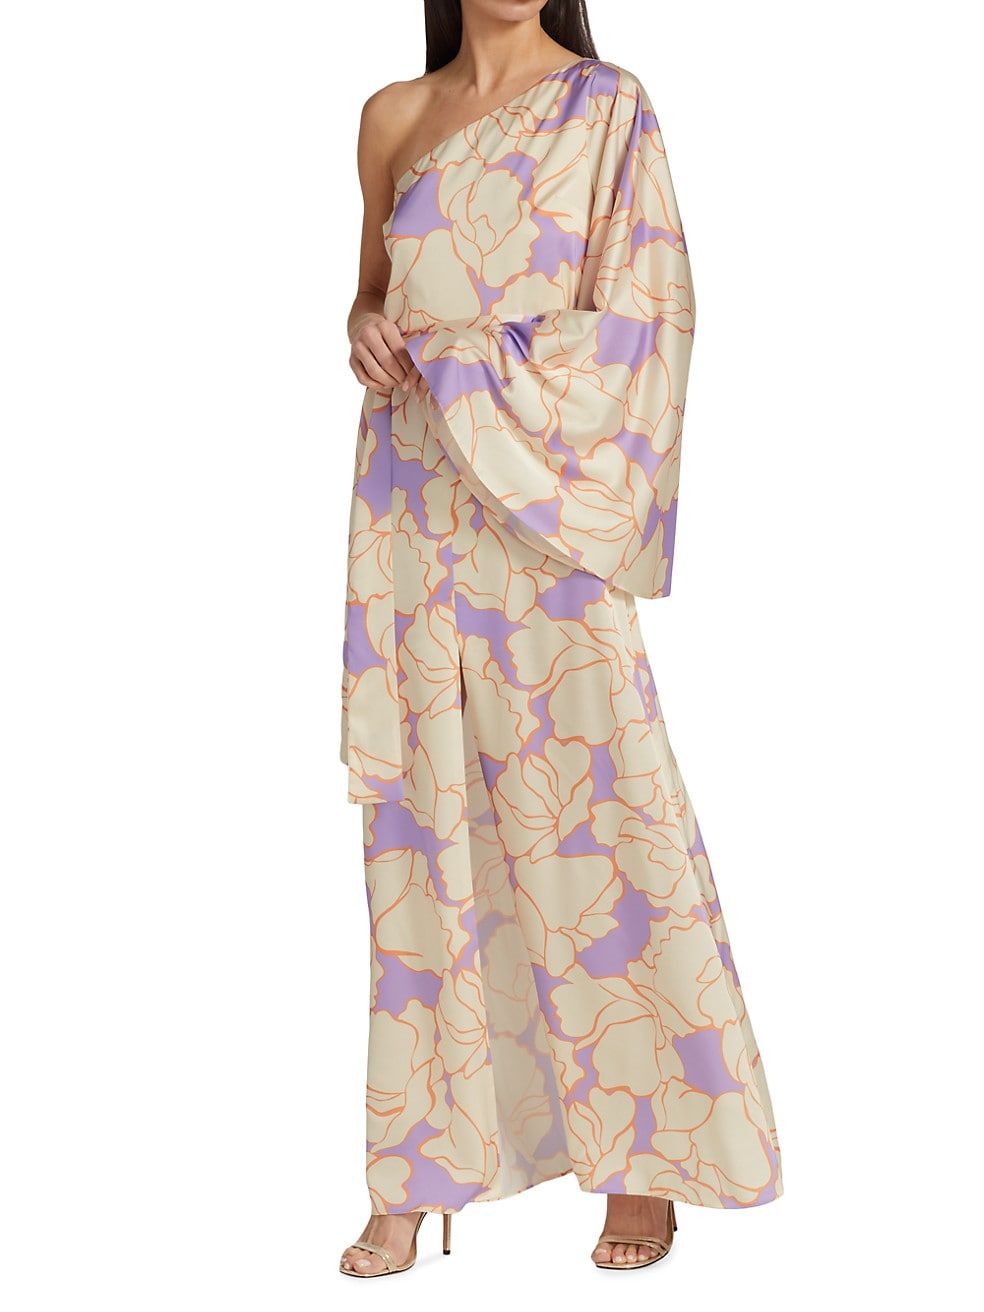 Leonette Asymmetric Floral Dress | Saks Fifth Avenue